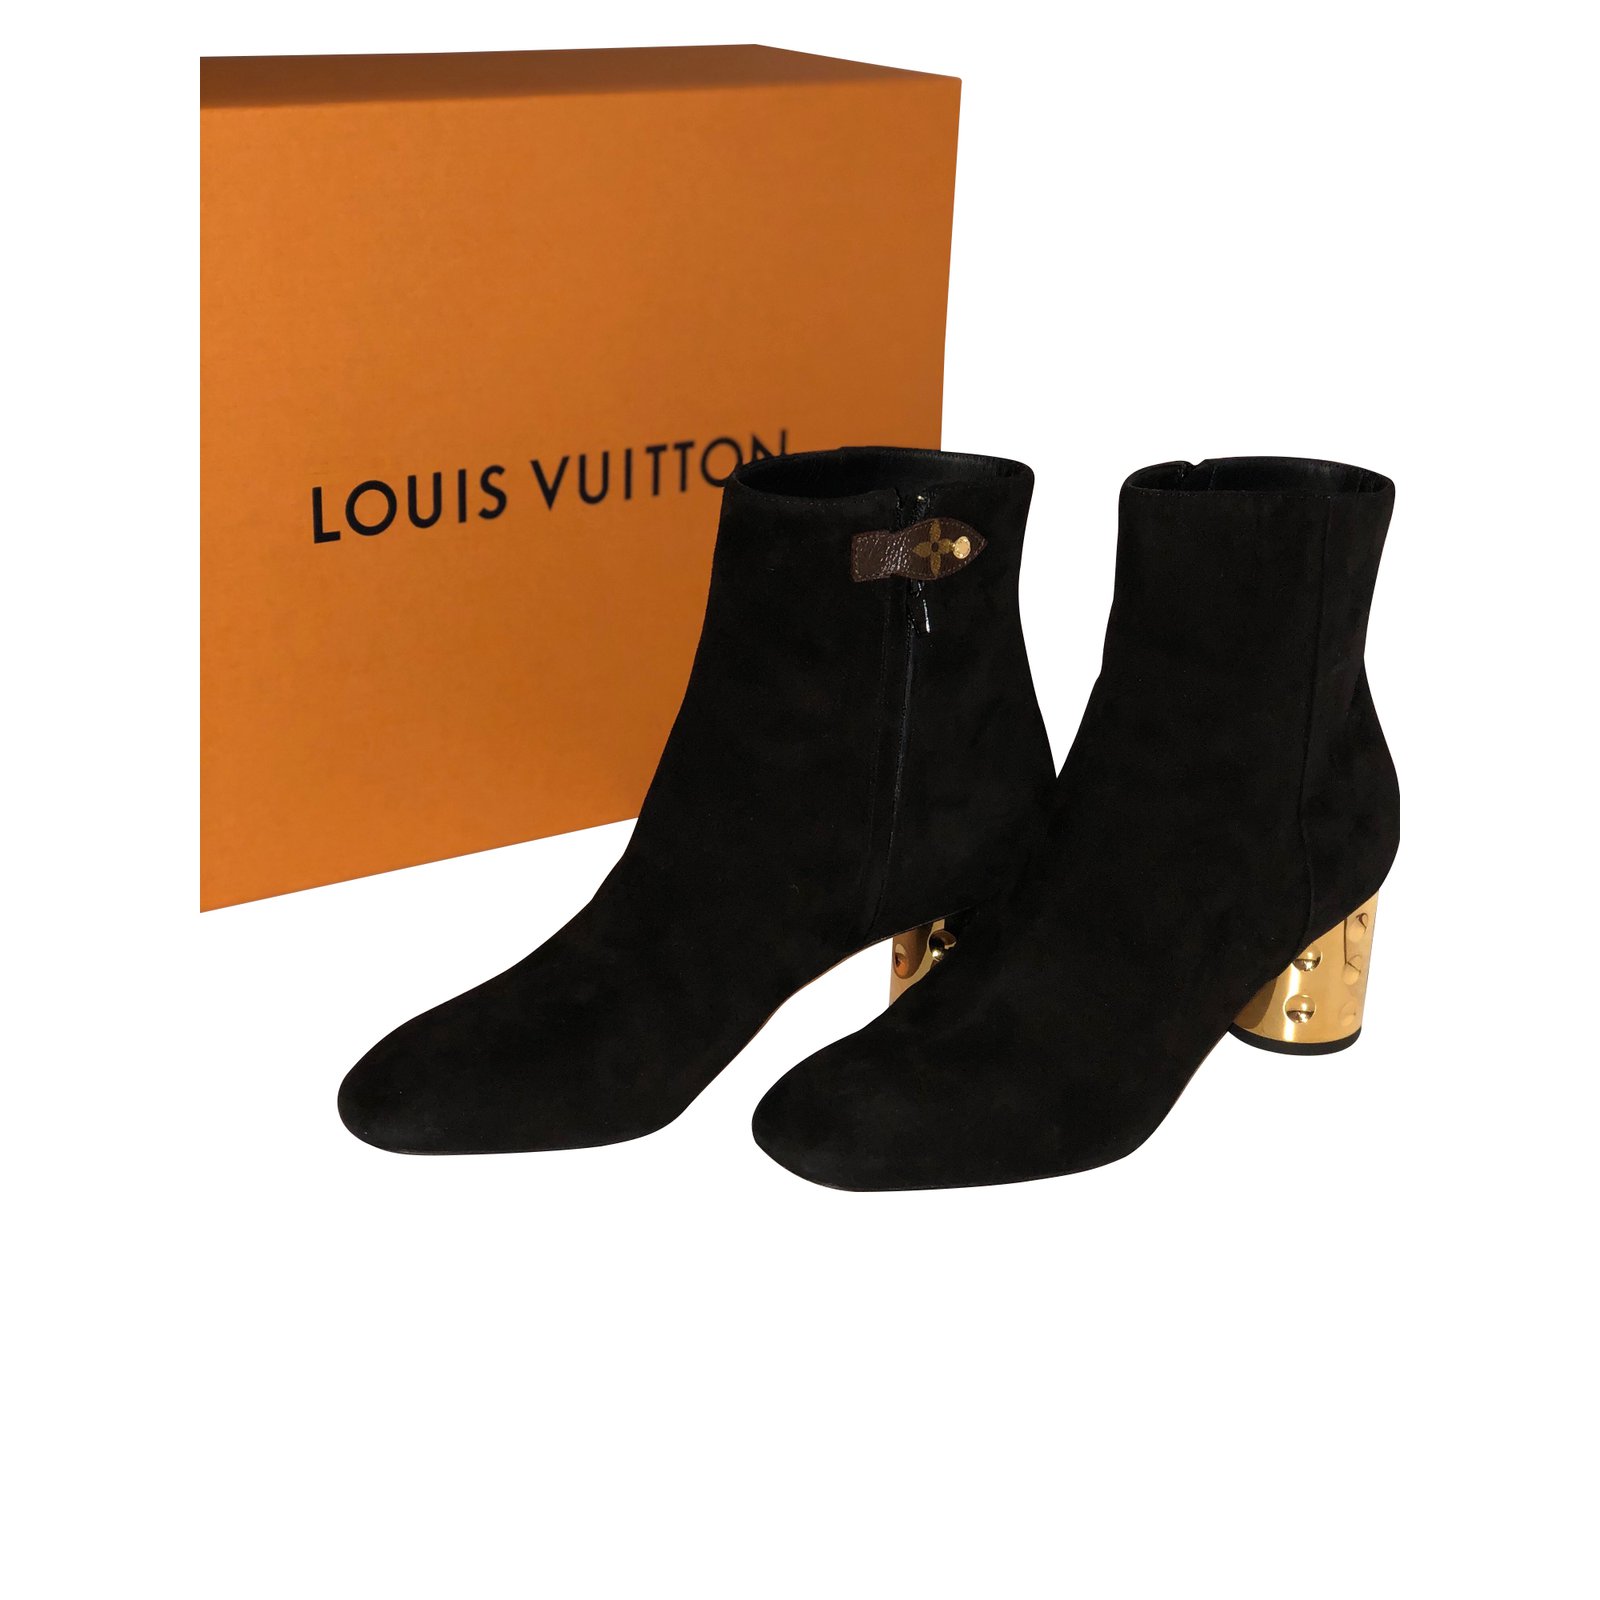 Louis Vuitton  Shoes  Louis Vuitton Silhouette Ankle Boot Size 39 Fits  Size 8  Poshmark